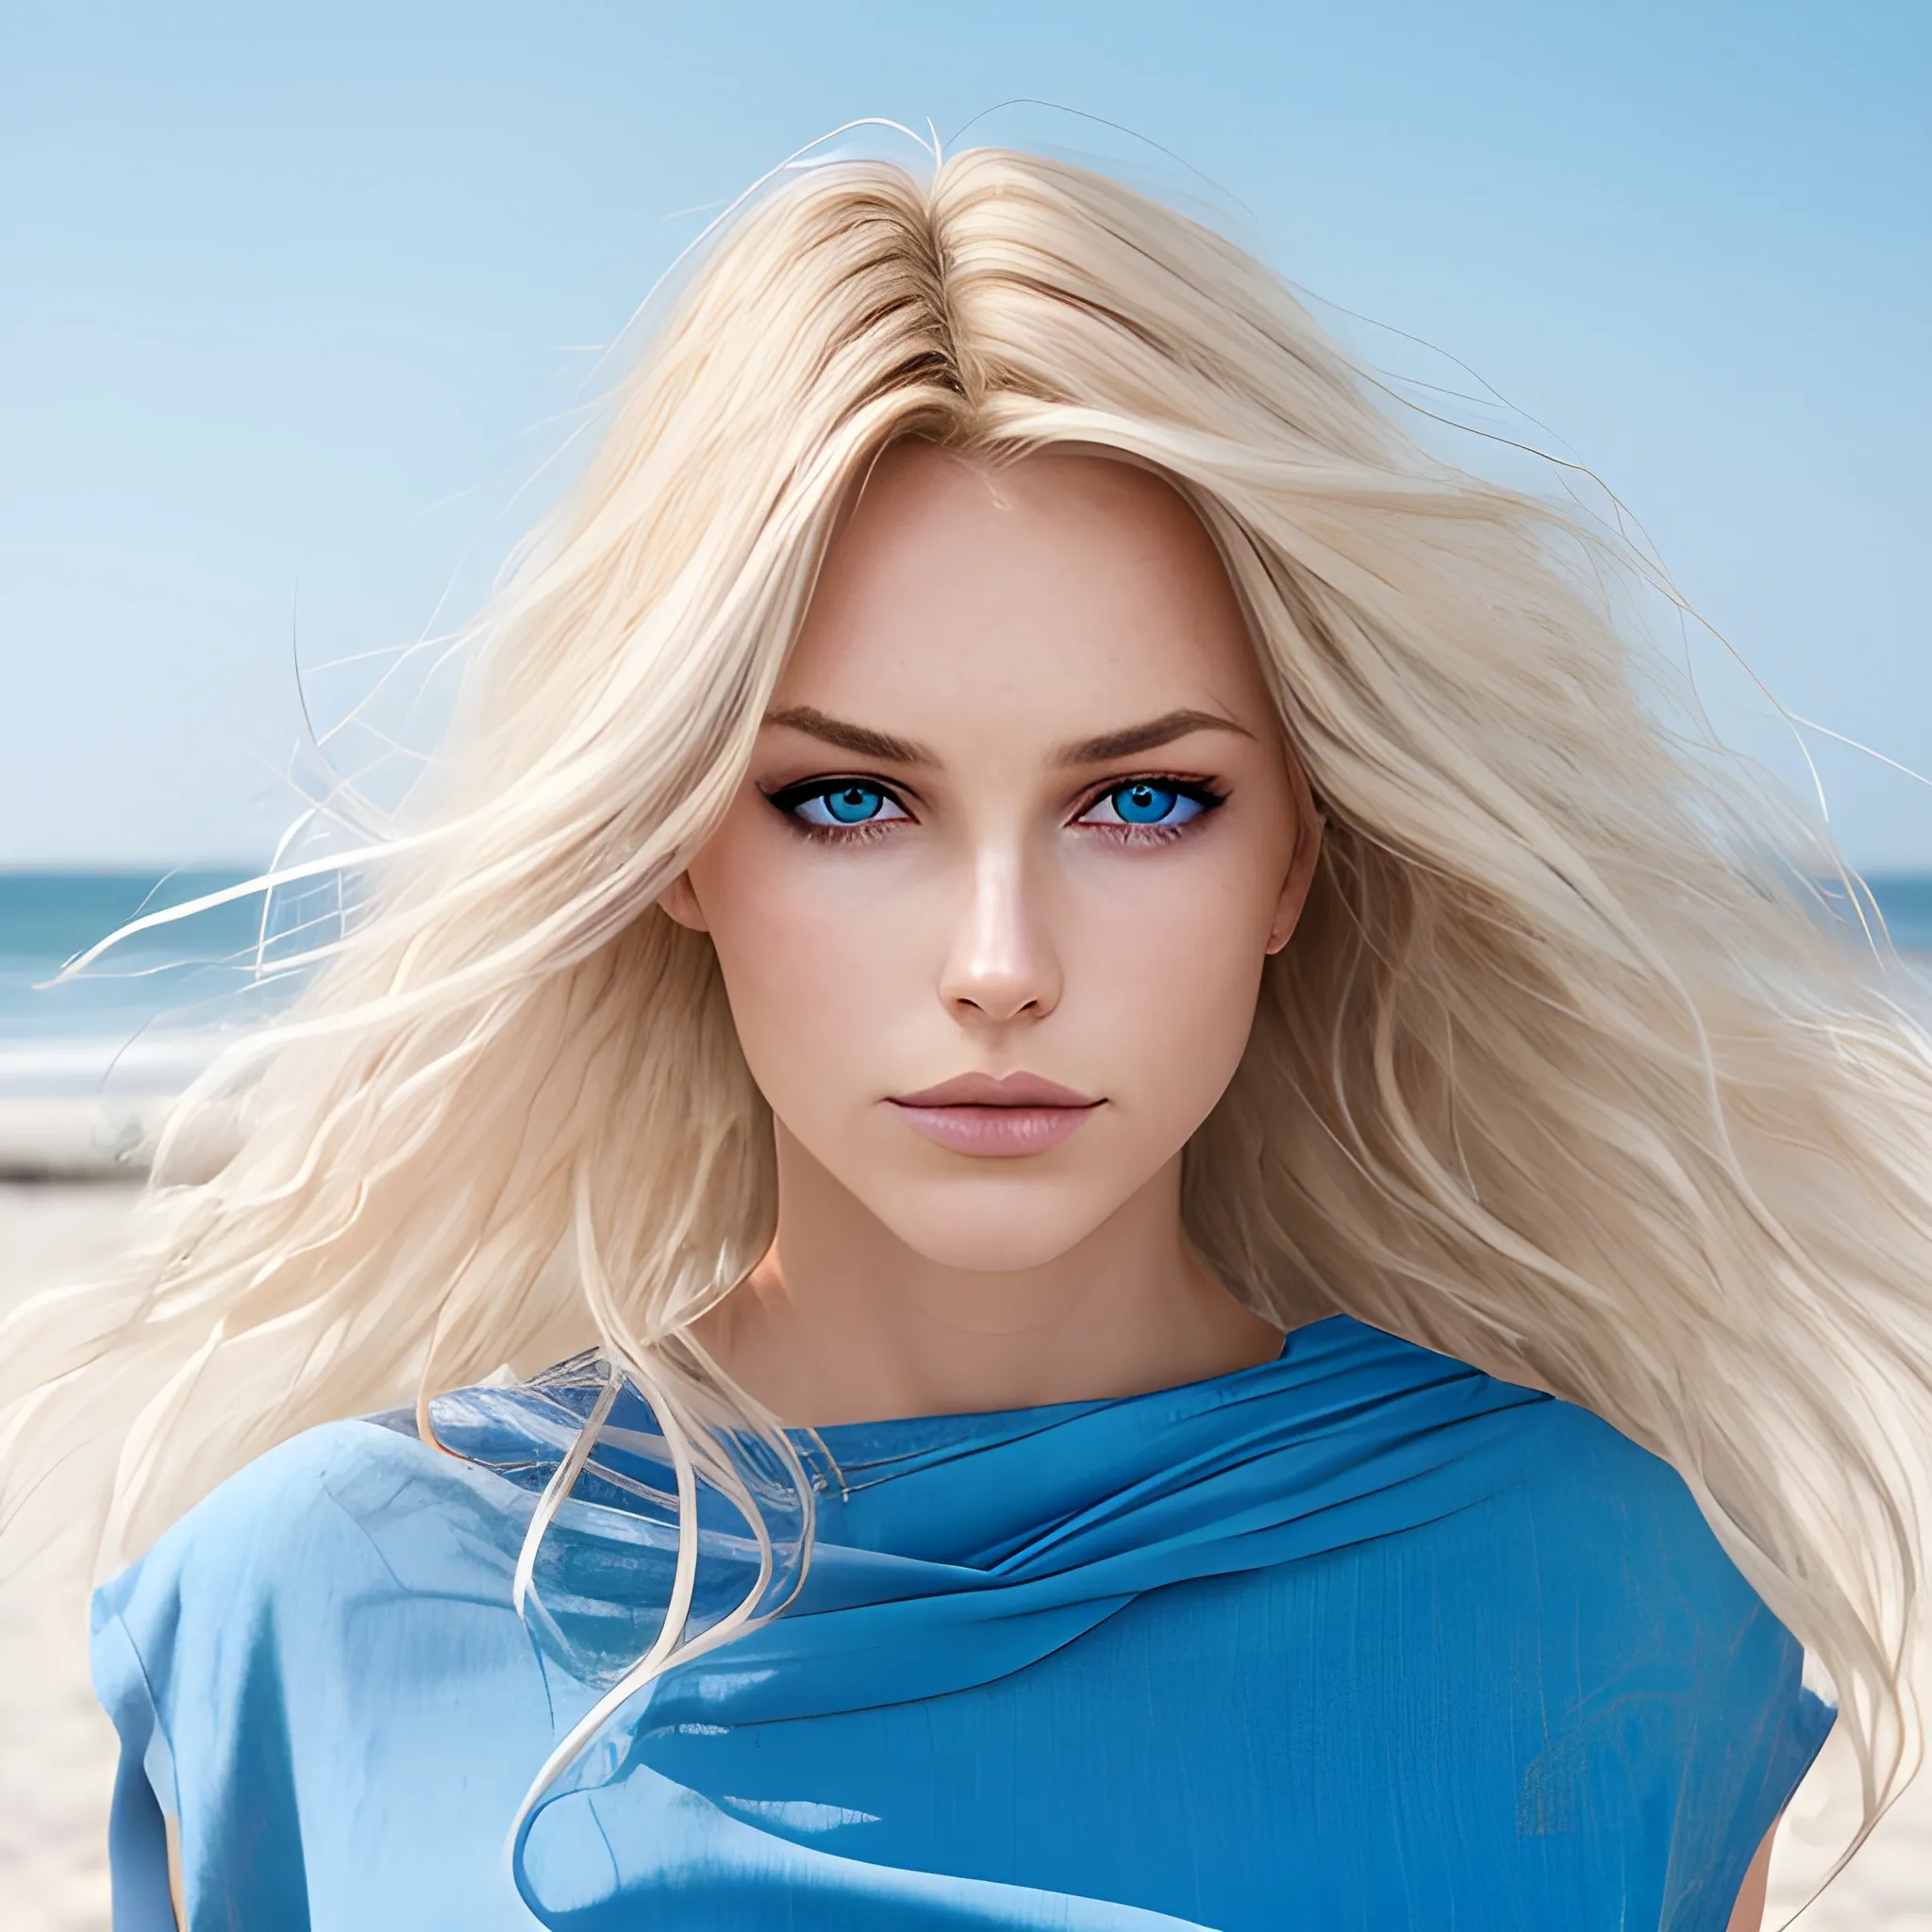 __Haarfarbe__, European Woman, lange Blonde Haare, Strandhintergrund, Sommer, Fachmann, 4K, HD, UHD, 8 TAUSEND, hohe Detailgenauigkeit, Ultra-Definition, Blaue Augen,